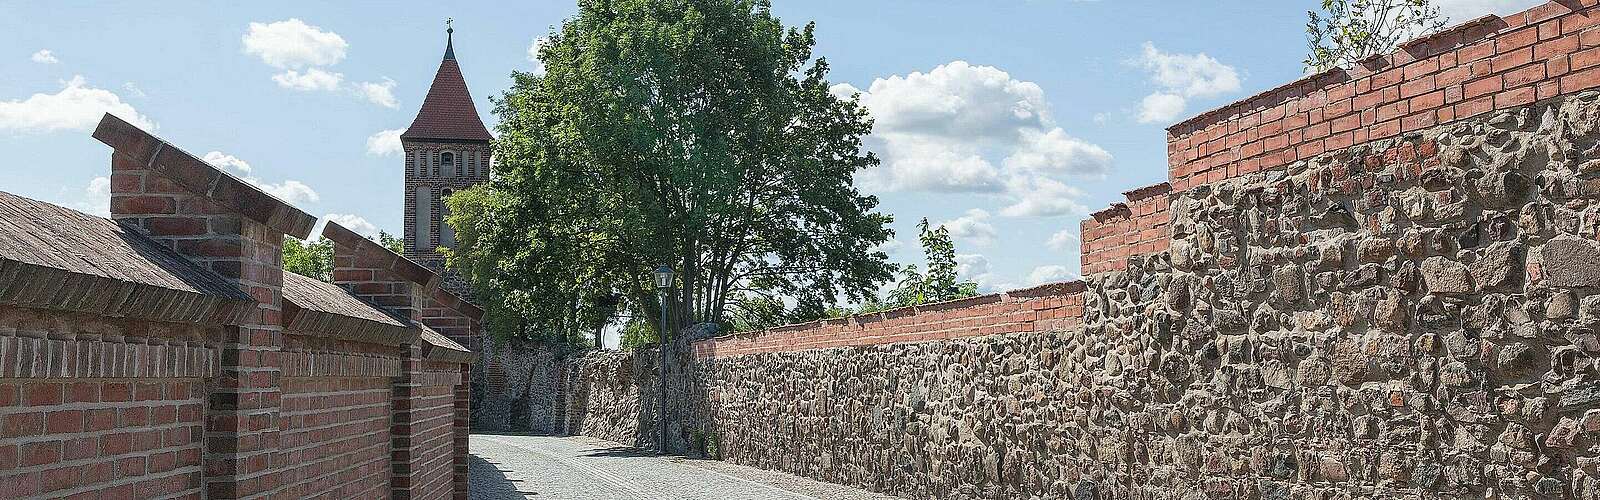 Stadtmauer von Jüterbog,
        
    

        Foto: Fotograf / Lizenz - Media Import/Steffen Lehmann